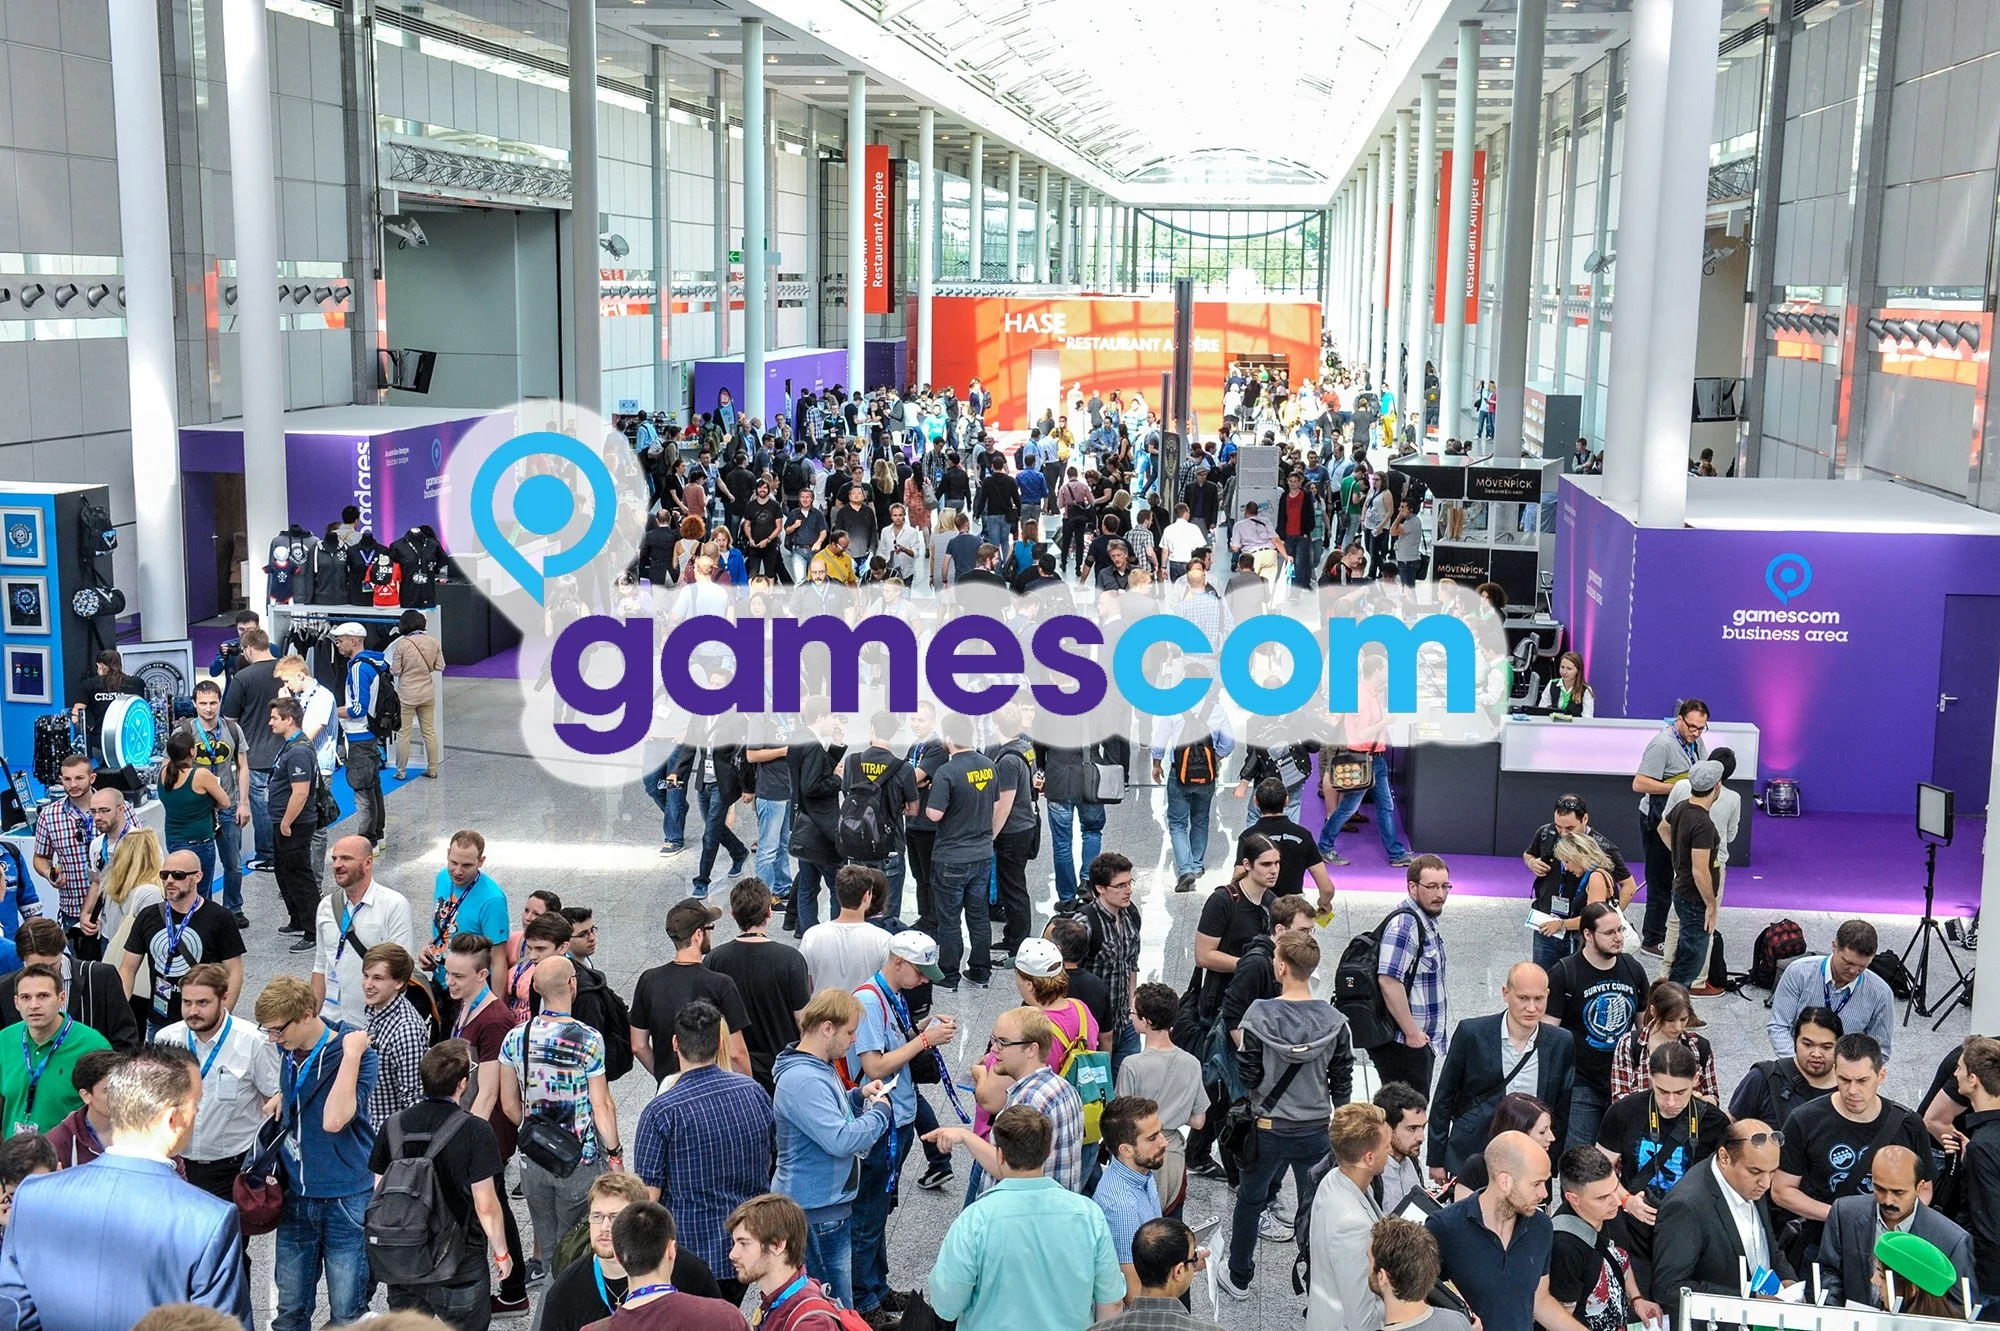 В отличие от прошедшей Е3, отметившейся десятками утечек, о том, что будет анонсировано на Gamescom, на данный момент ничего известно – а выставка пройдет уже на этой неделе! Какие же игры точно будут показаны на Gamescom?